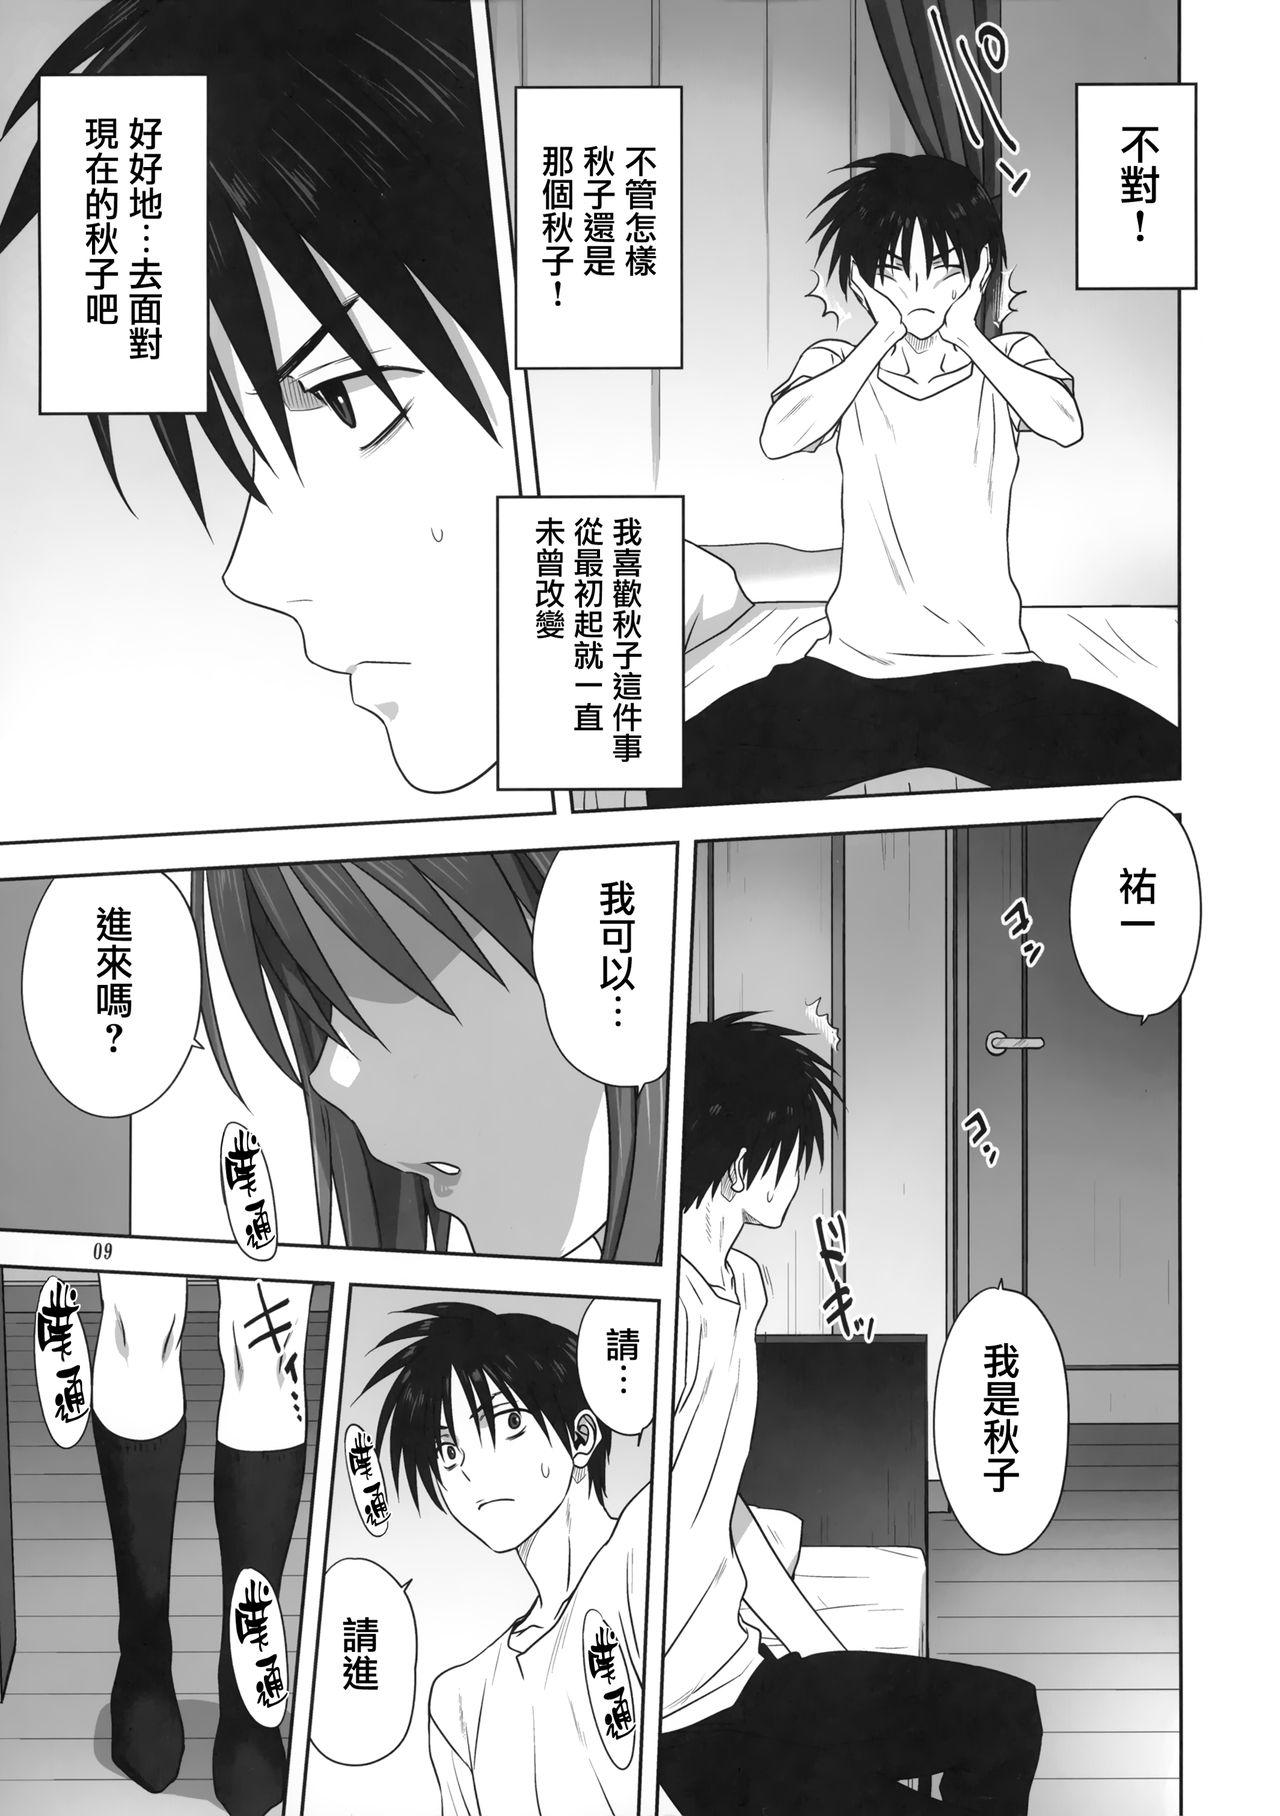 8teenxxx Akiko-san to Issho 26 - Kanon Gay Massage - Page 8